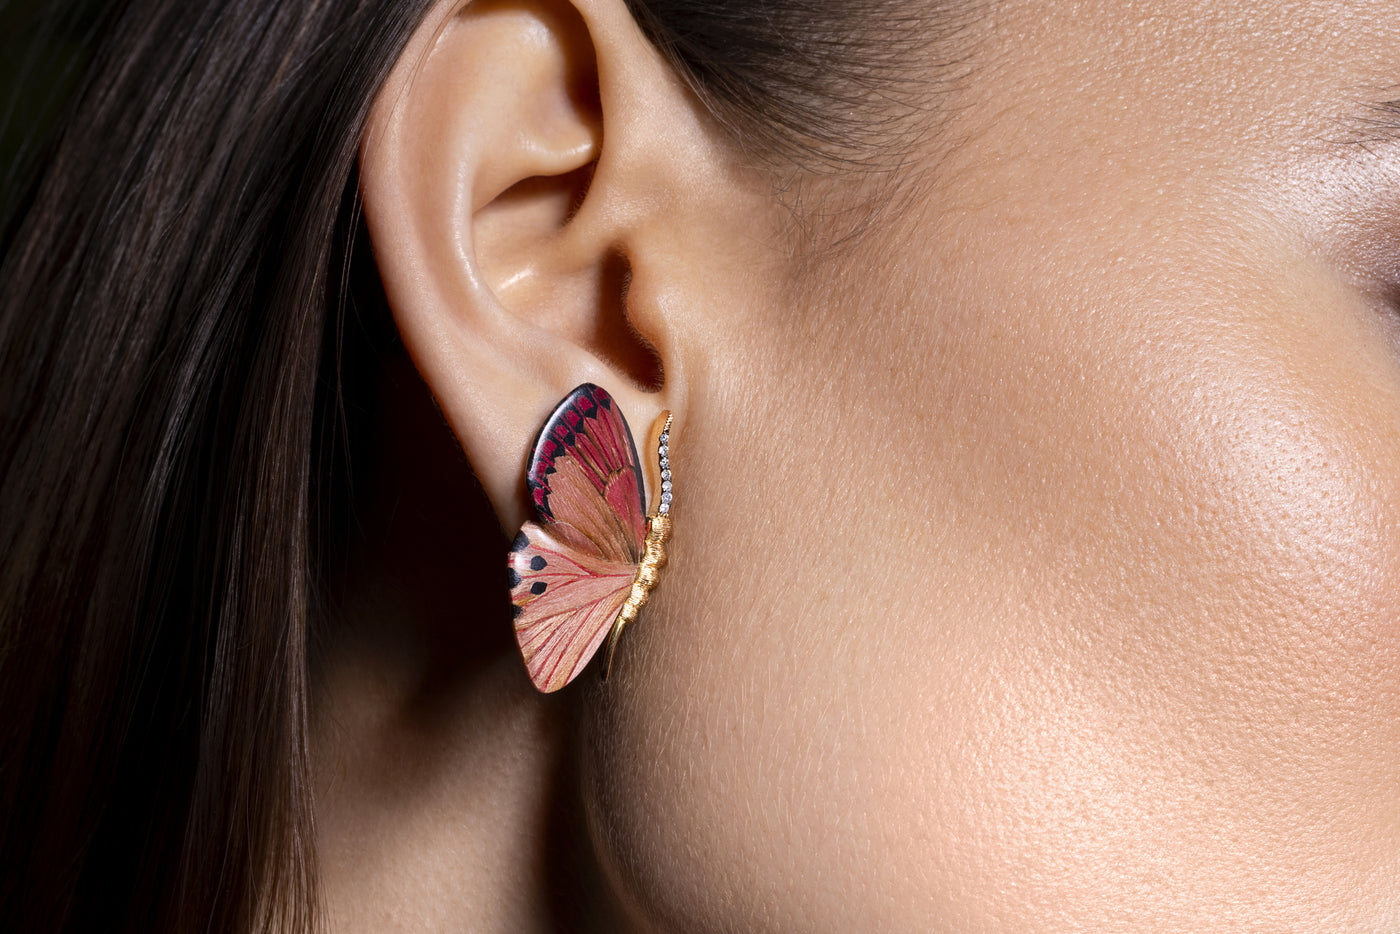 Pink Butterfly Earrings - Ileana Makri